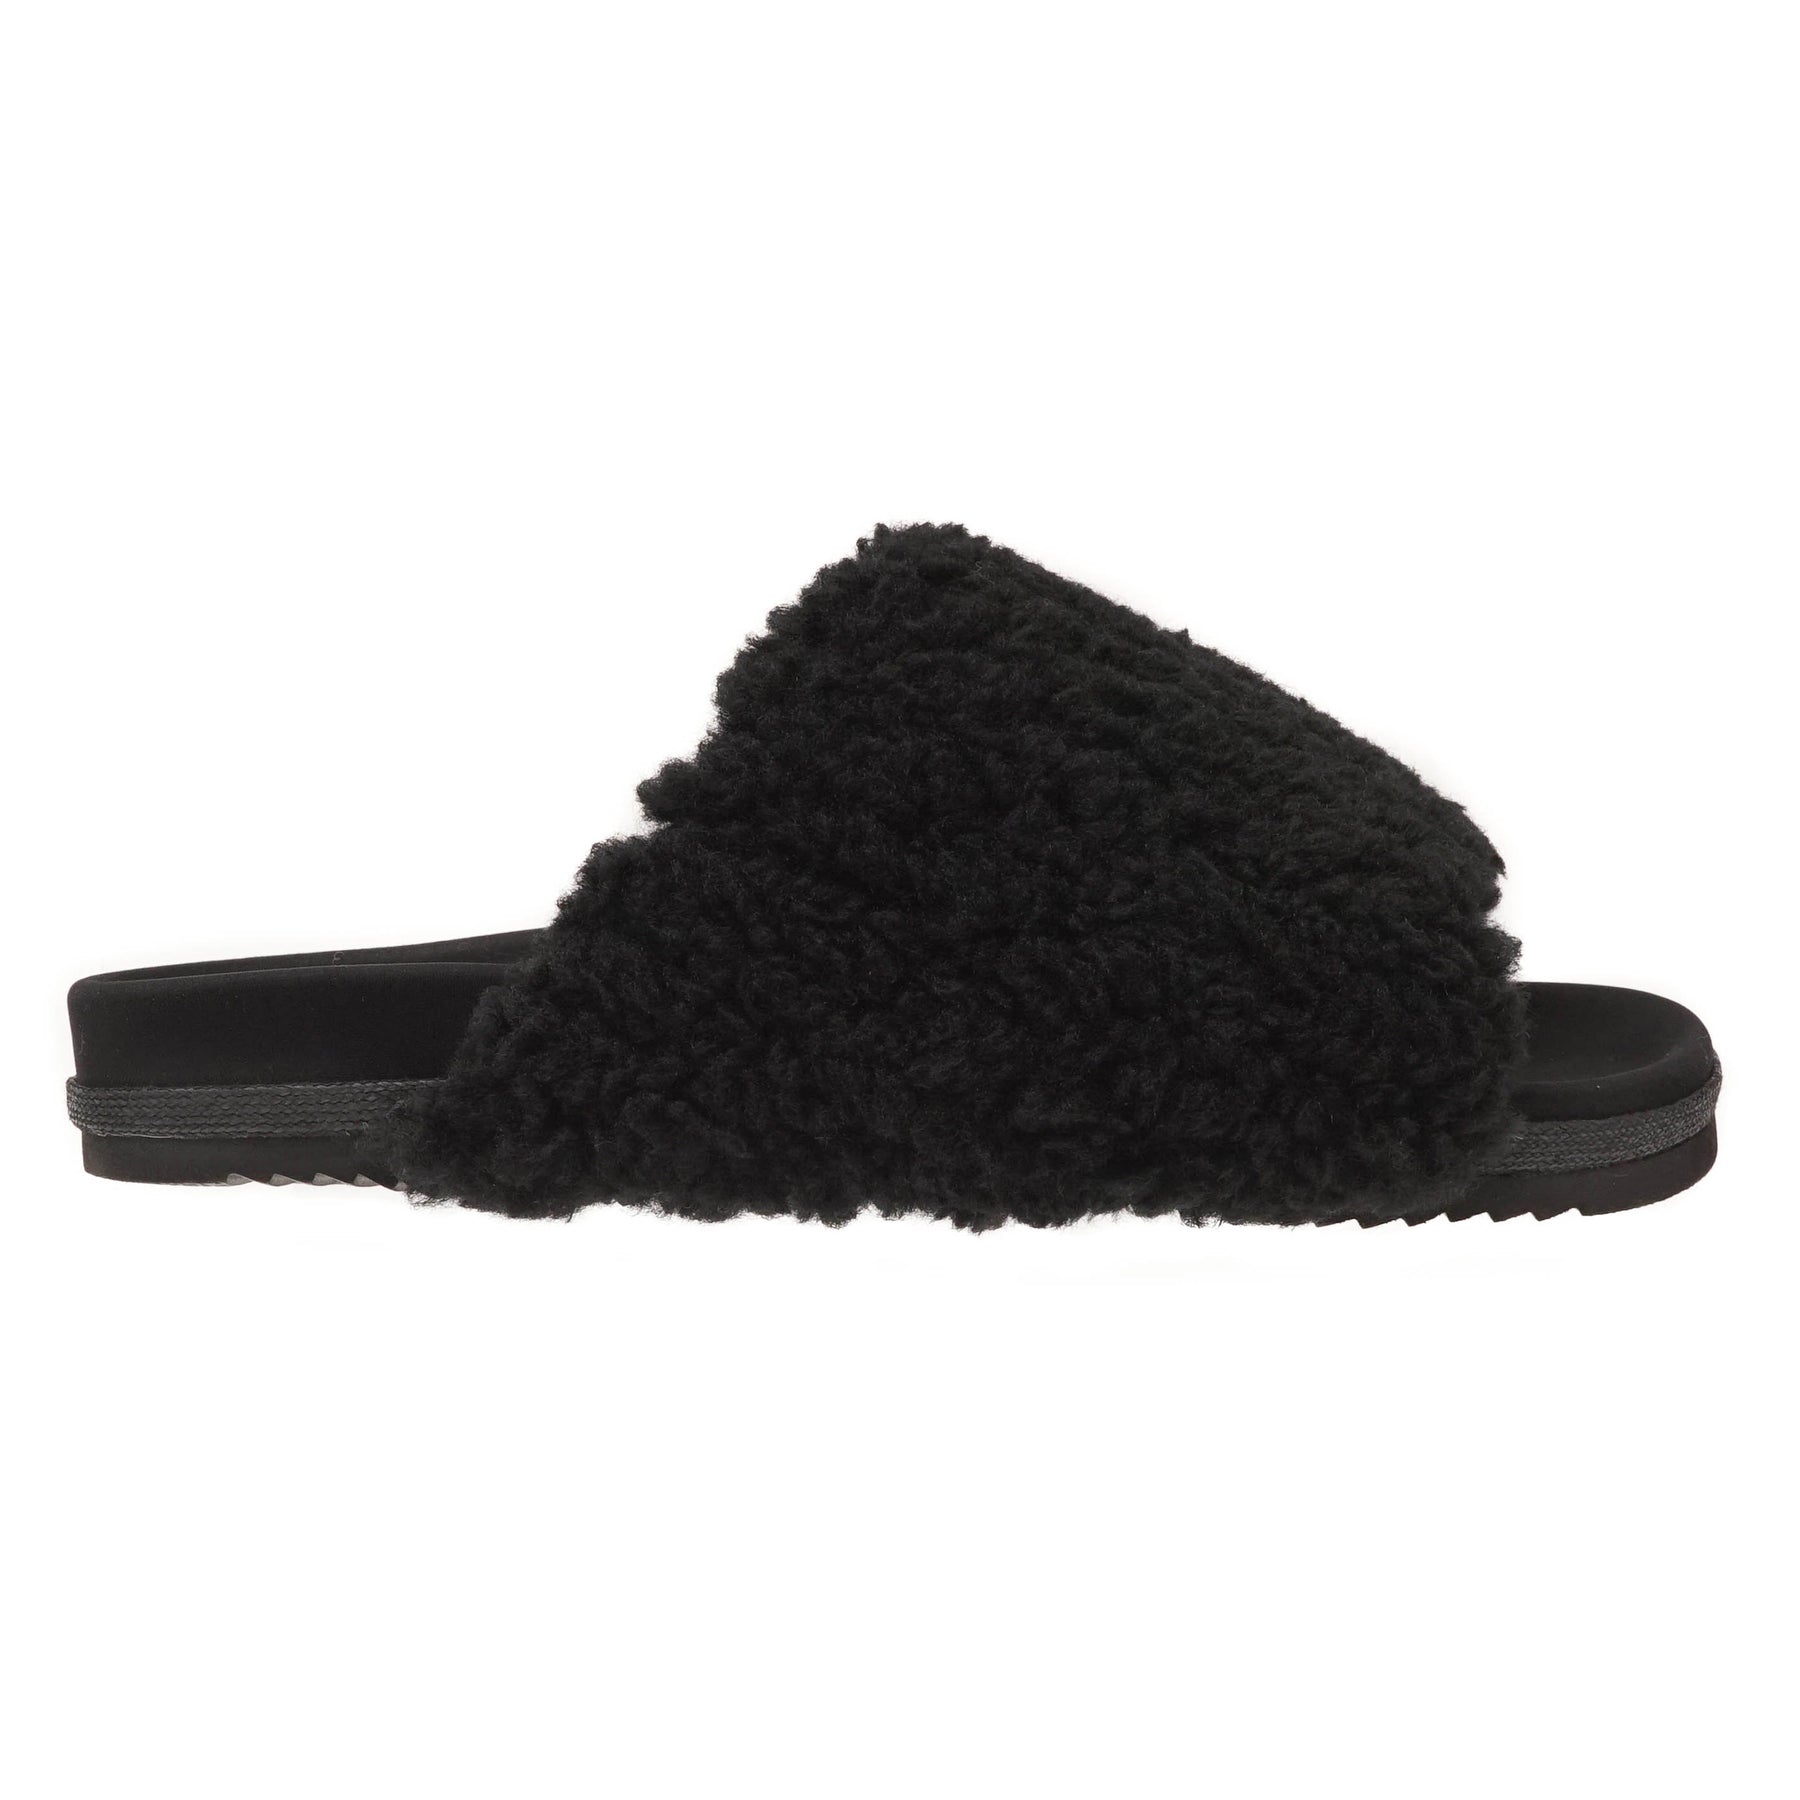 ROAM Fuzzy Slippers Black Faux Shearling – R0AM